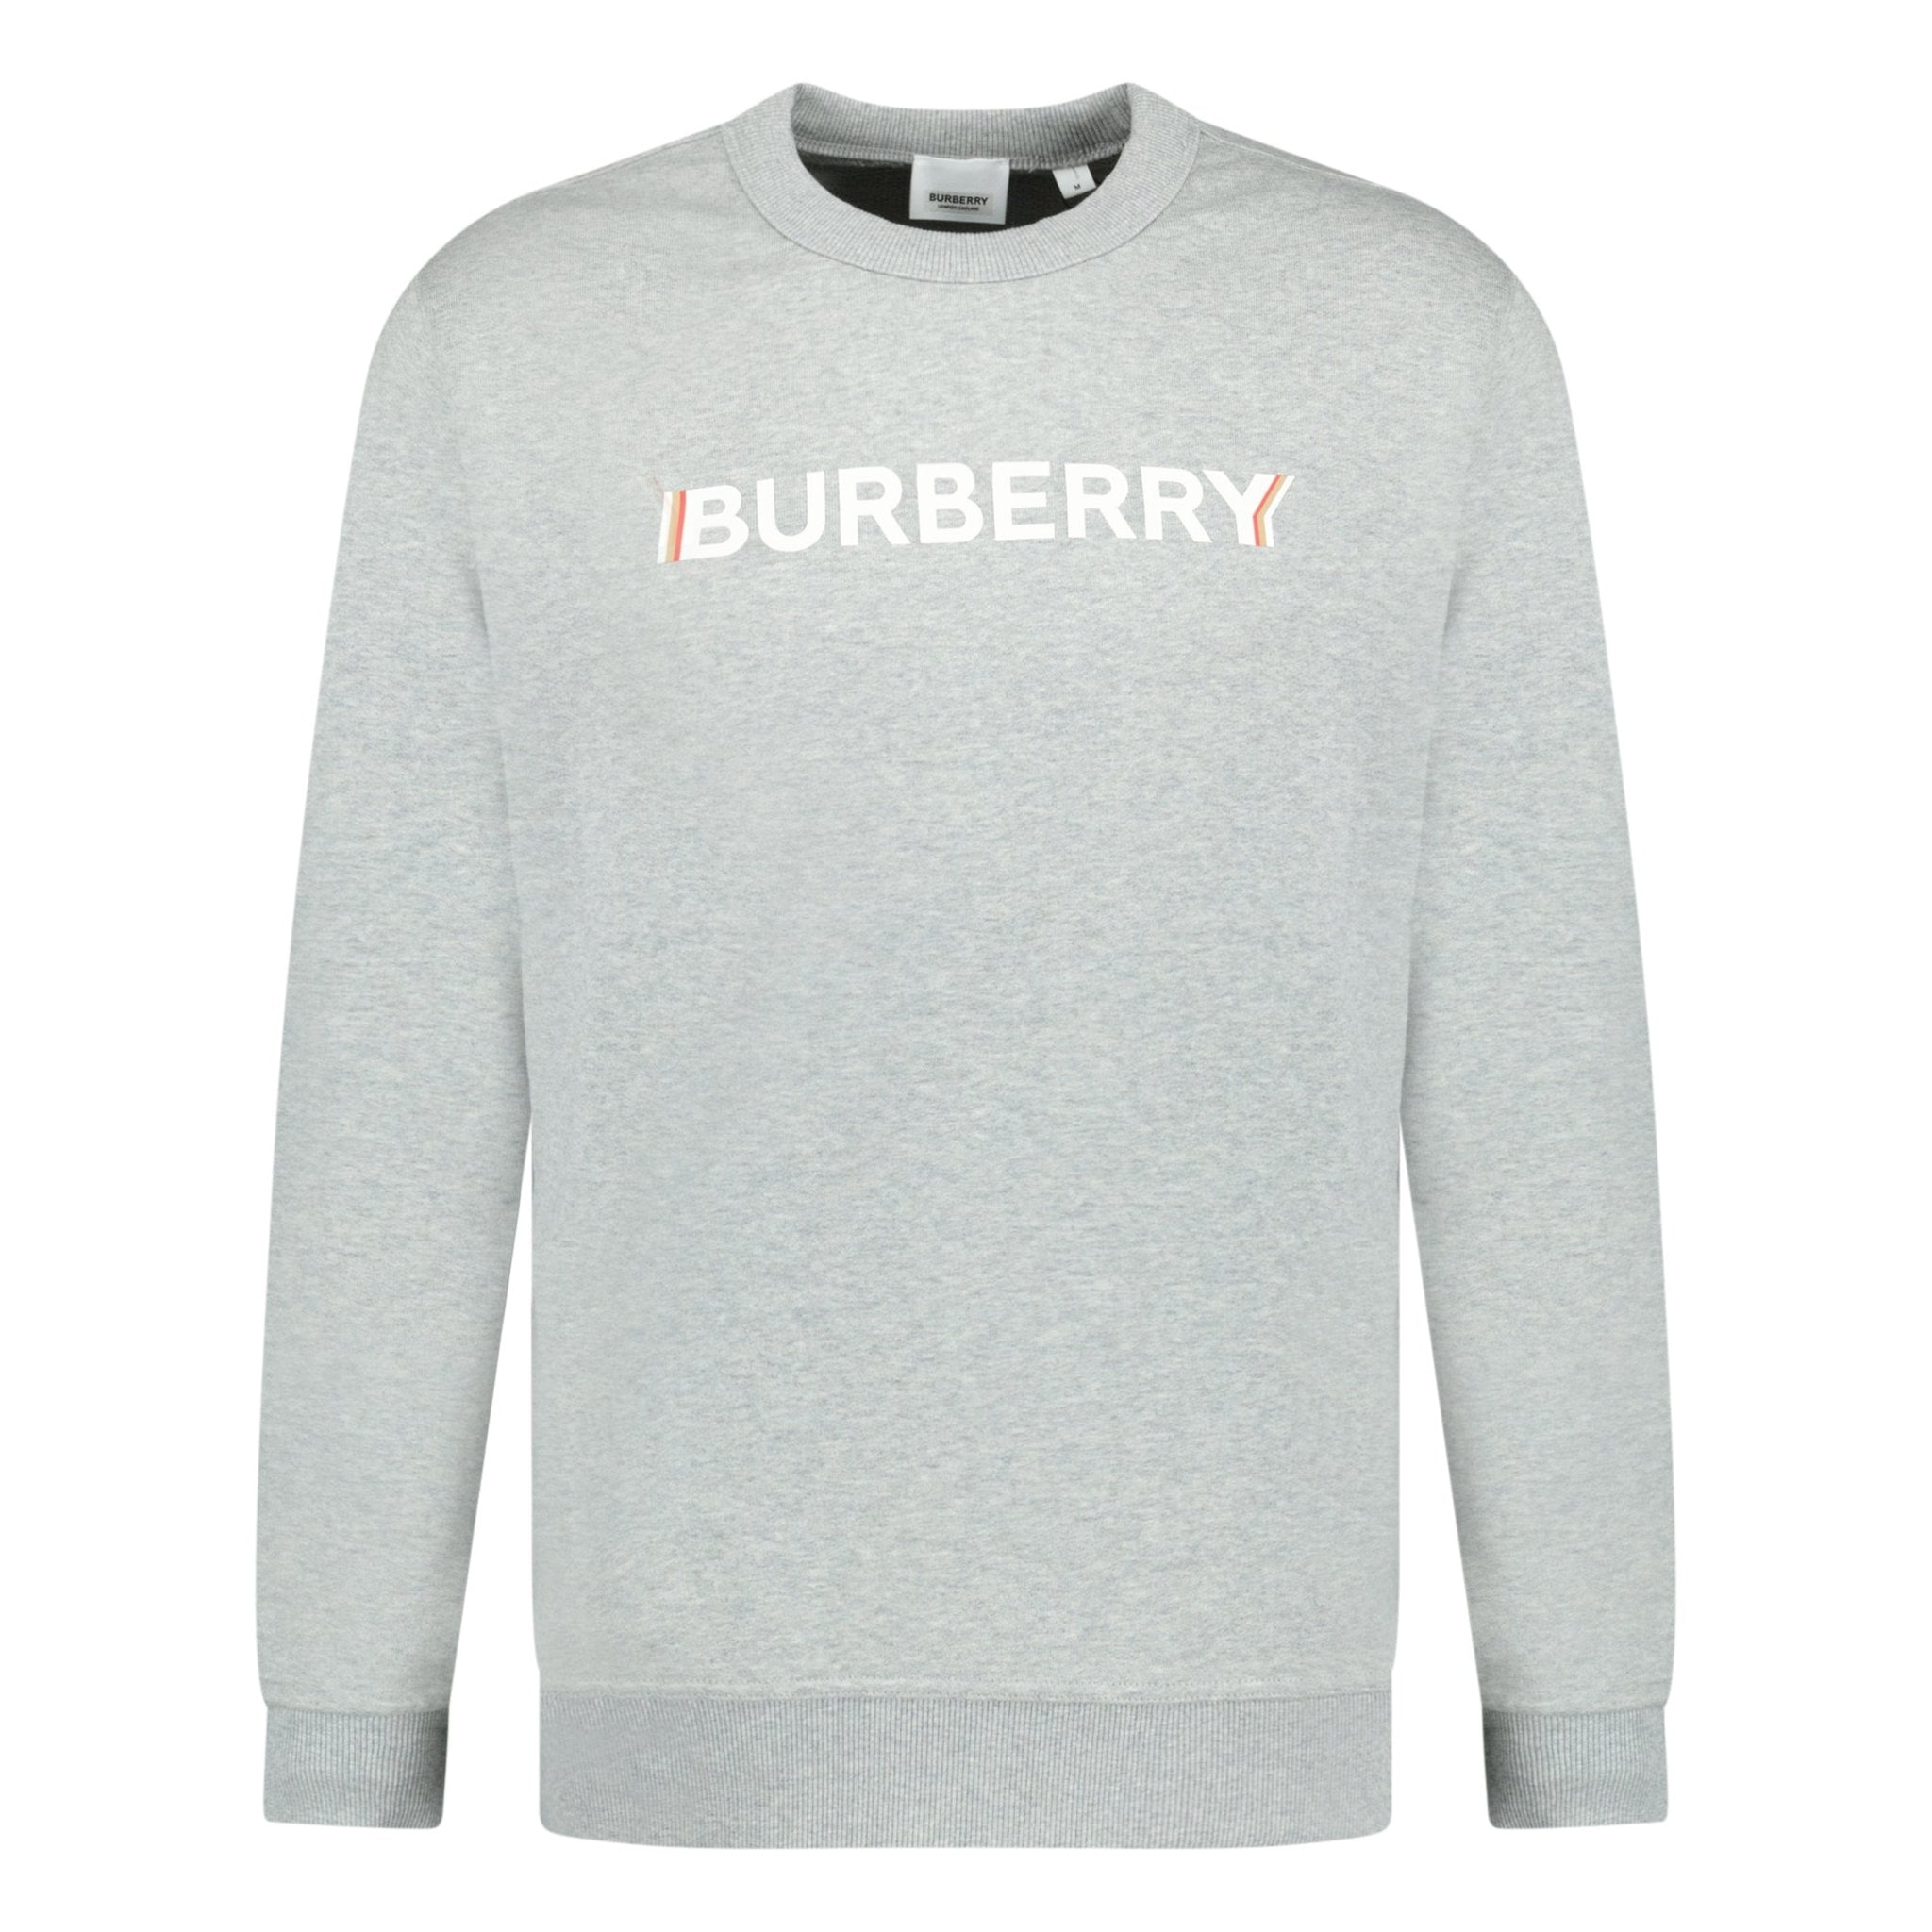 Burberry 'Fawson' Logo Print Sweatshirt Grey